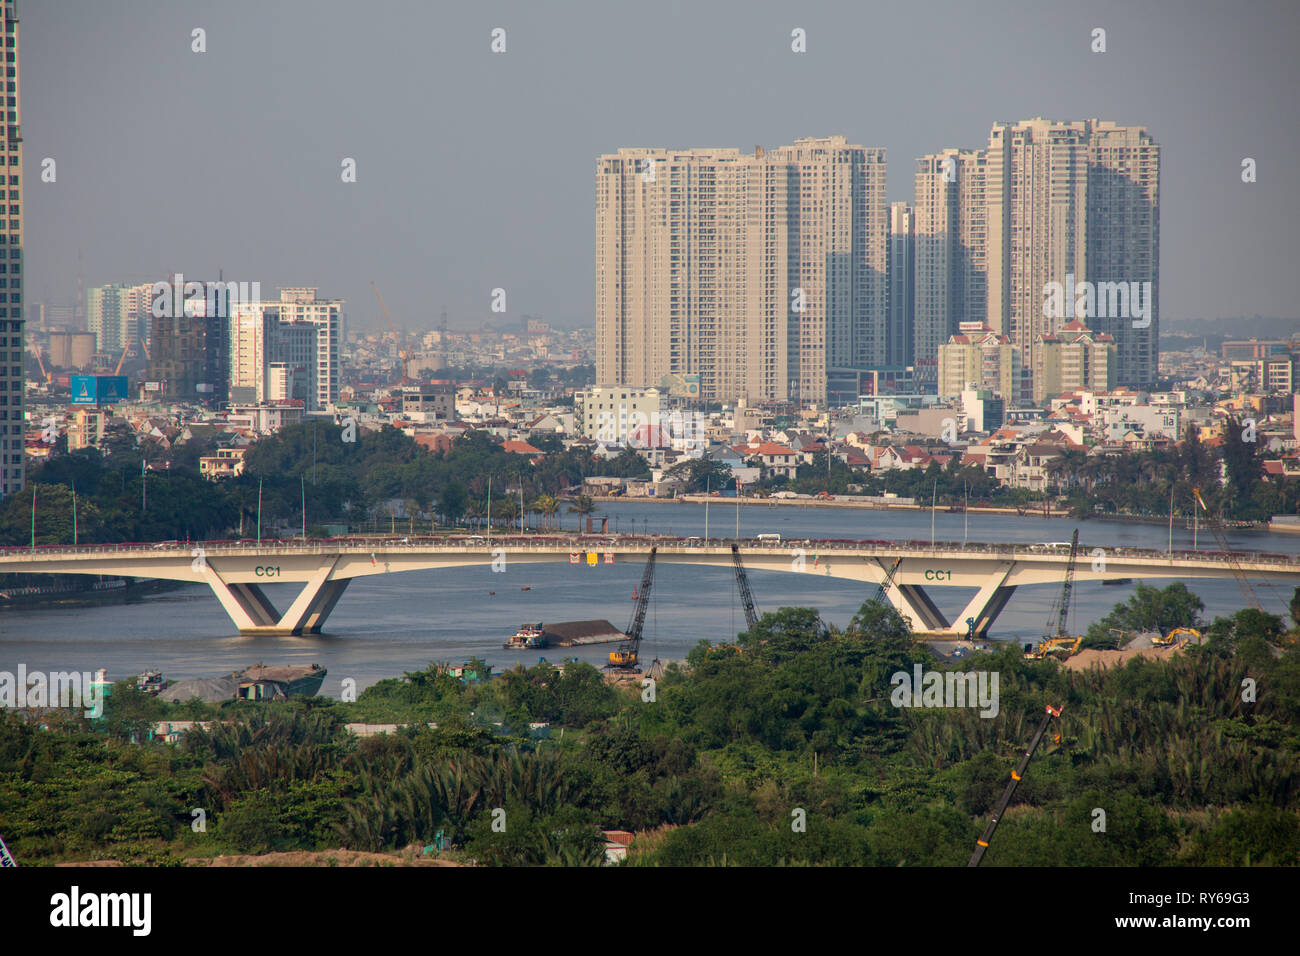 Rivière Saigon, Ho Chi Minh City, Vietnam, dimanche 12 mars 2019. Jour ensoleillé chaud avec des maximums de 34 degrés le long de la rivière. Ho Chi Minh est la plus grande ville au Vietnam avec 9 millions de résidents. Credit : WansfordPhoto/Alamy Live News Banque D'Images